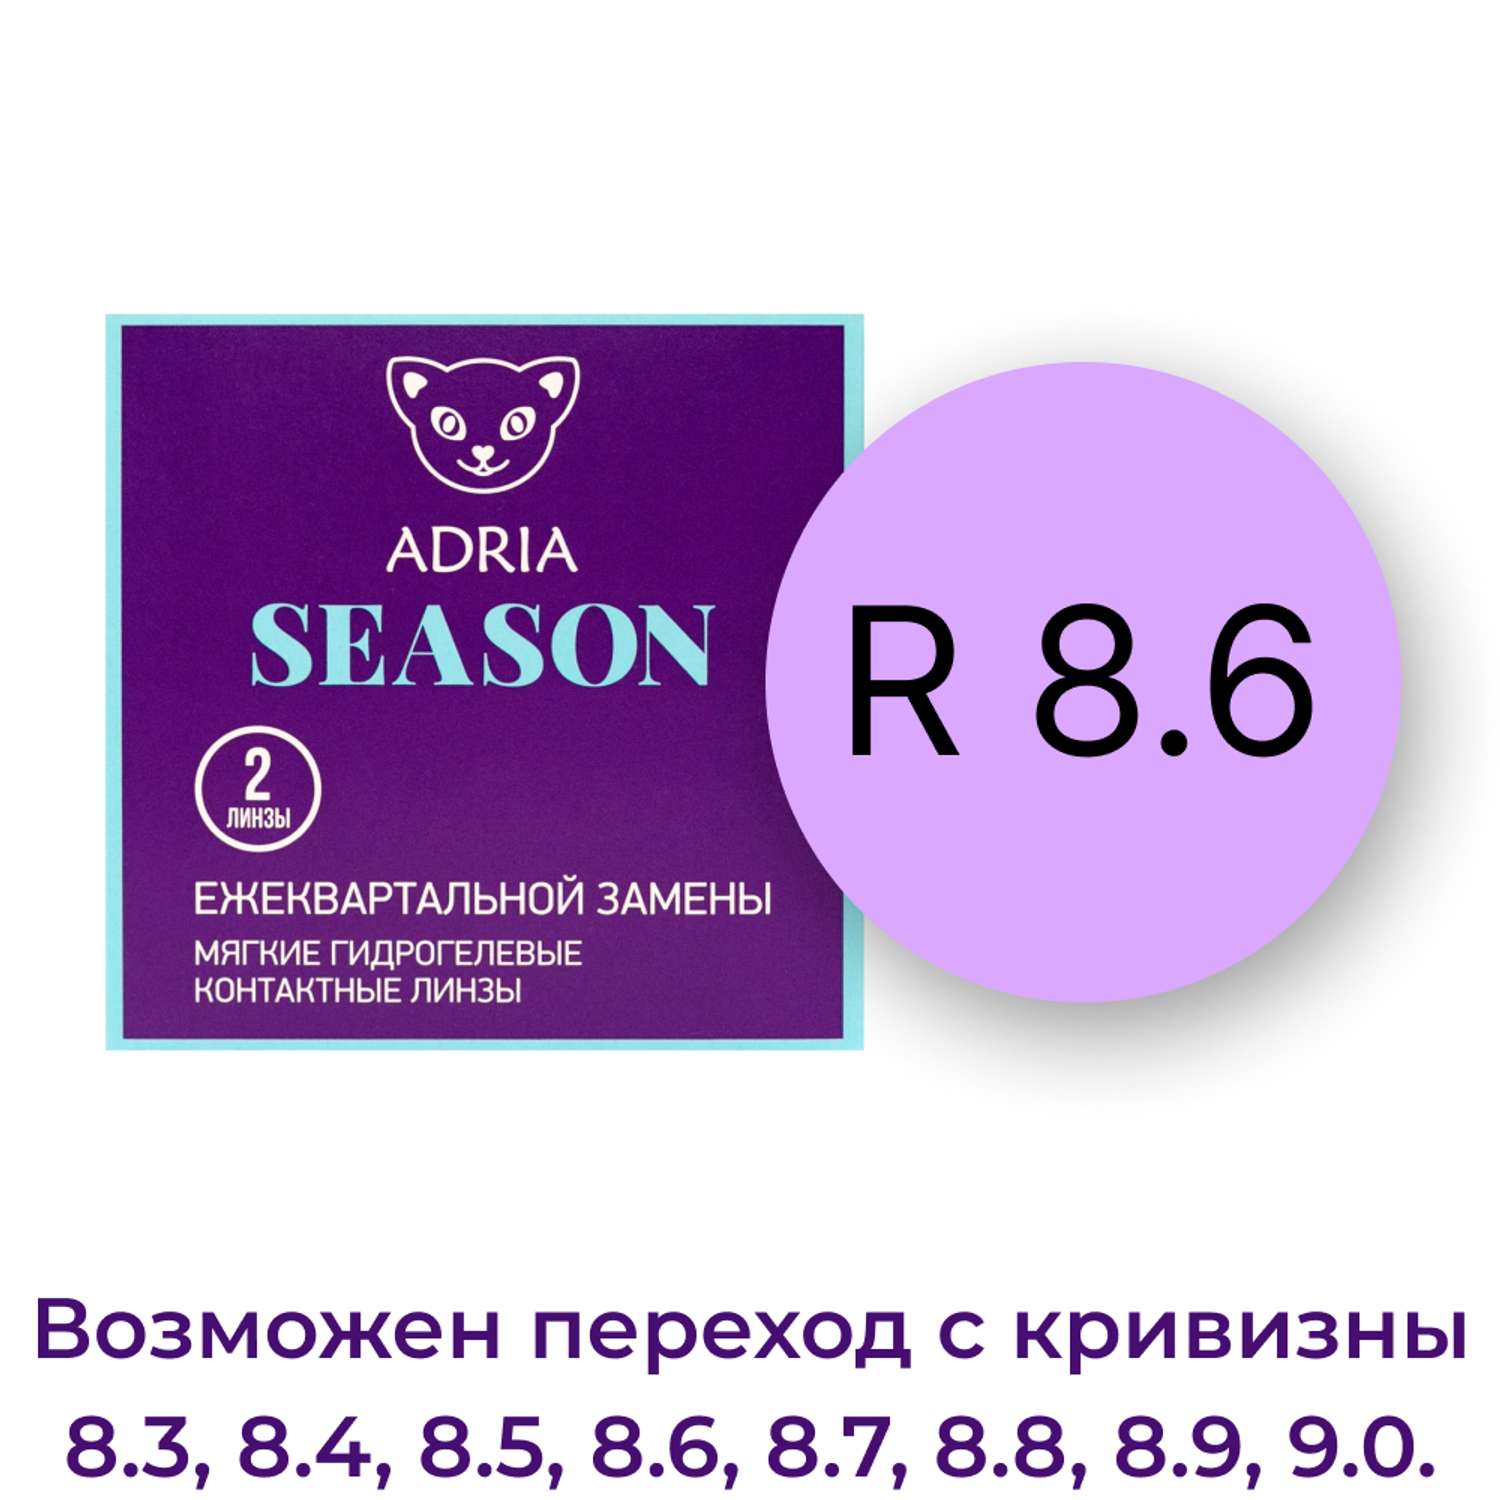 Контактные линзы ADRIA Season 2 линзы R 8.6 -4.25 - фото 3